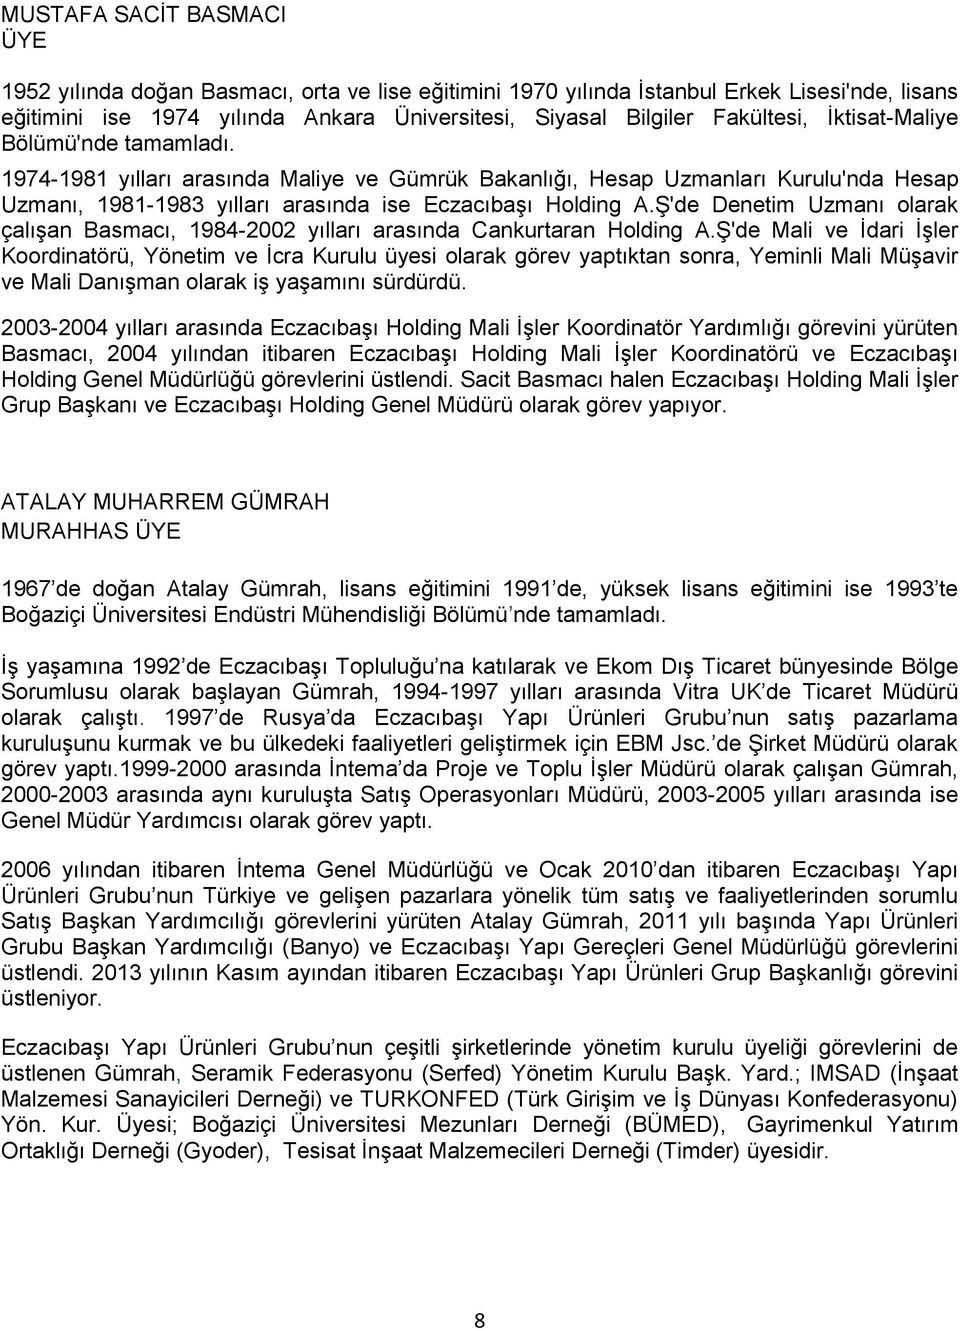 Ş'de Denetim Uzmanı olarak çalışan Basmacı, 1984-2002 yılları arasında Cankurtaran Holding A.